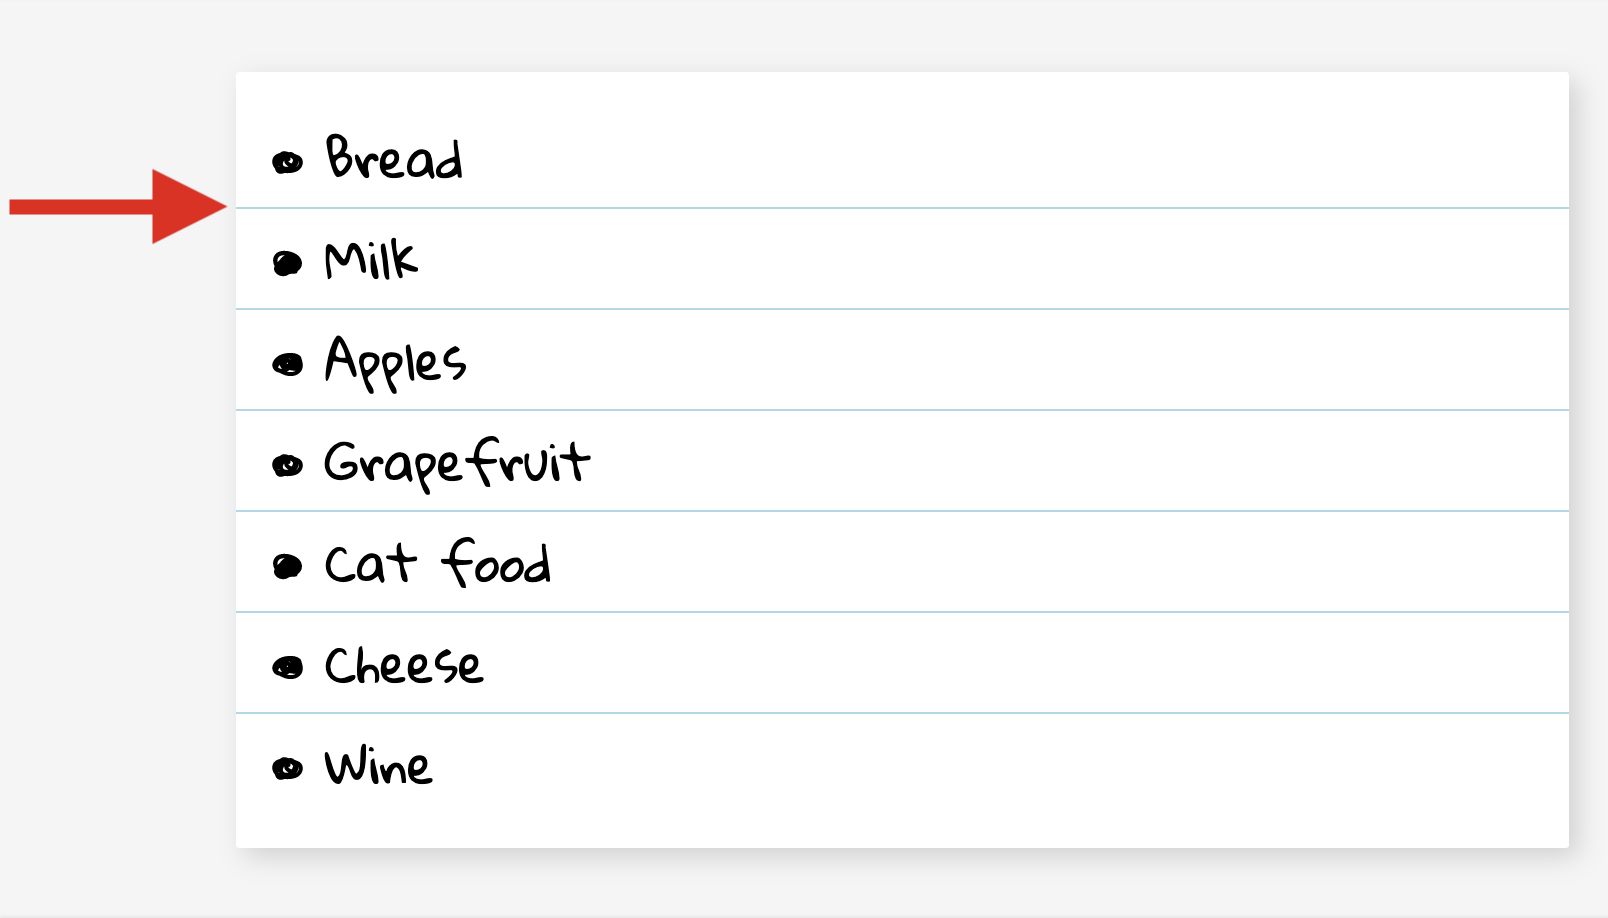 یک لیست مواد غذایی هر مورد دارای یک حاشیه پایین نازک است که از سمت چپ به لبه راست لیست امتداد دارد.